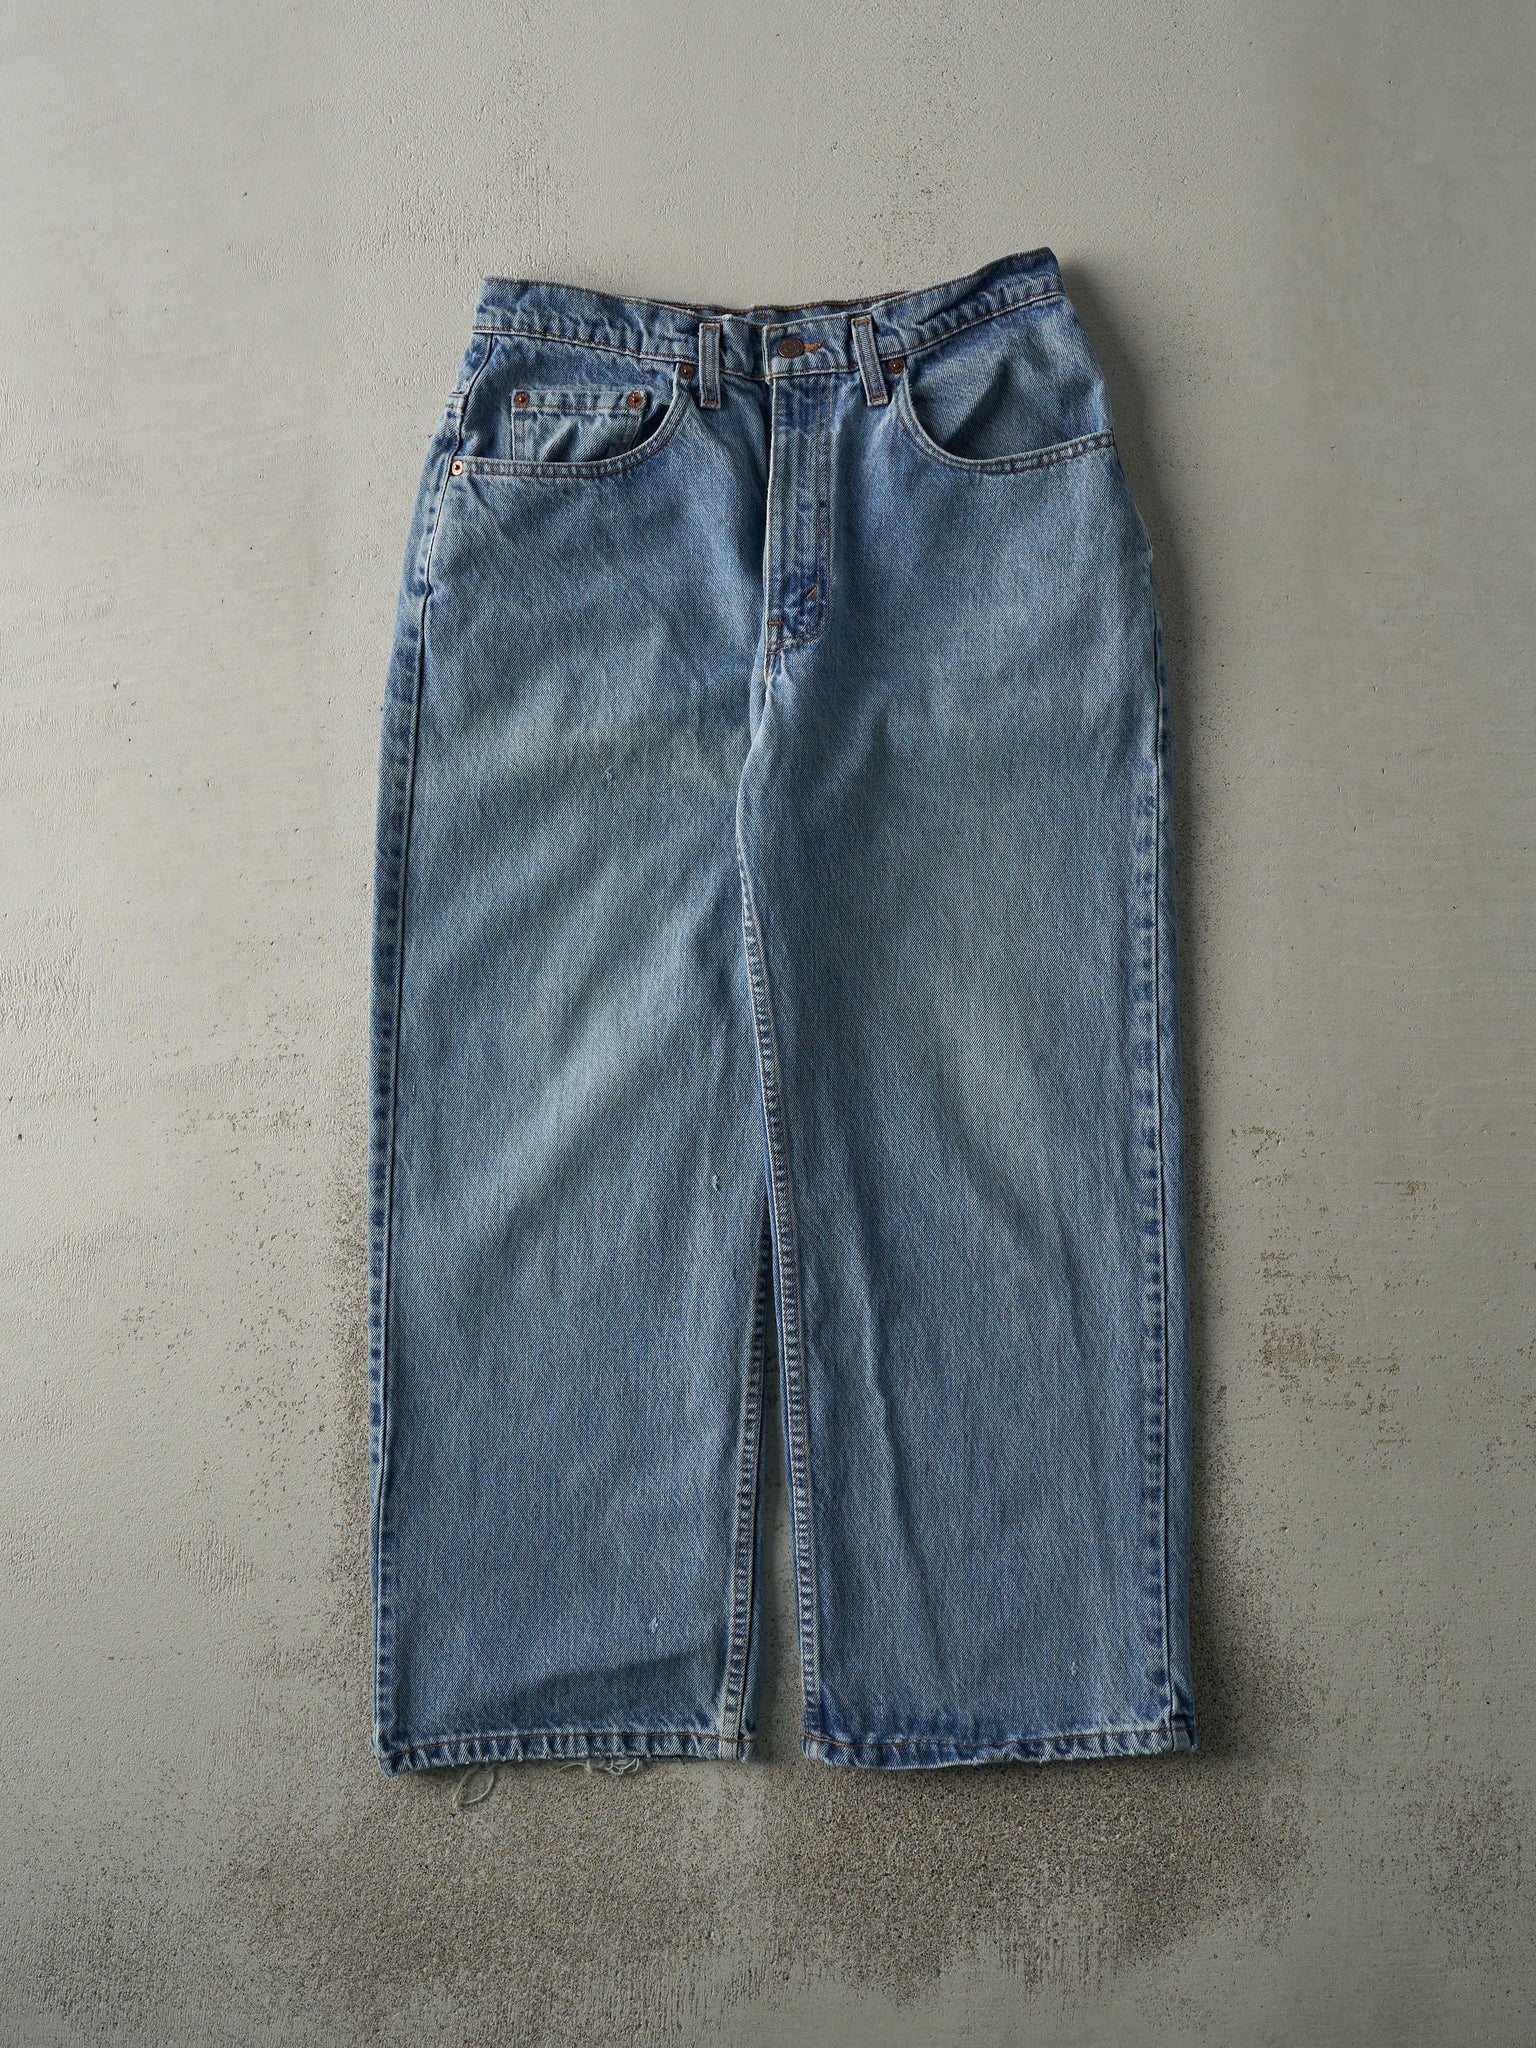 Vintage 90s Light Wash Levi's 575 Jeans (30x27)